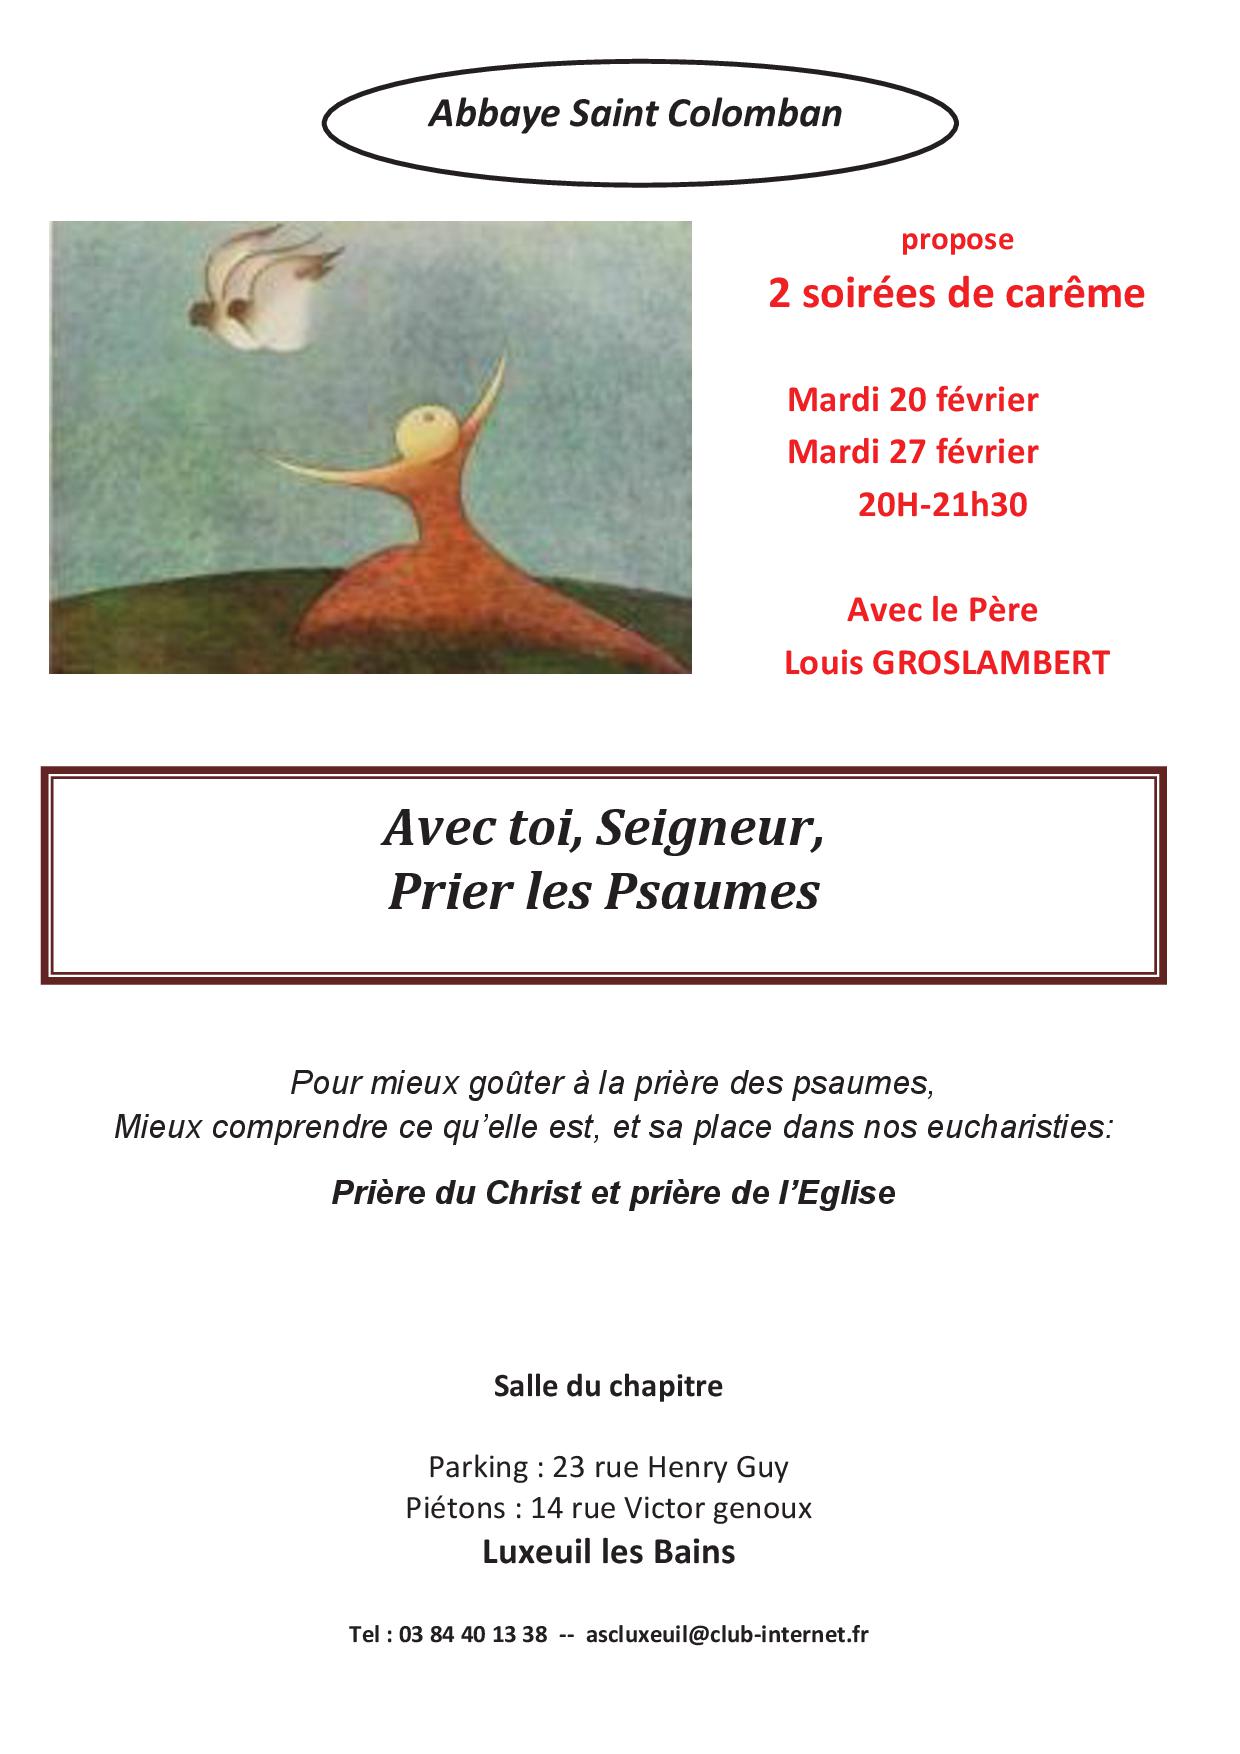 Soirée de Carême à Luxeuil-les-Bains (70) les 20 et 27 février 2018